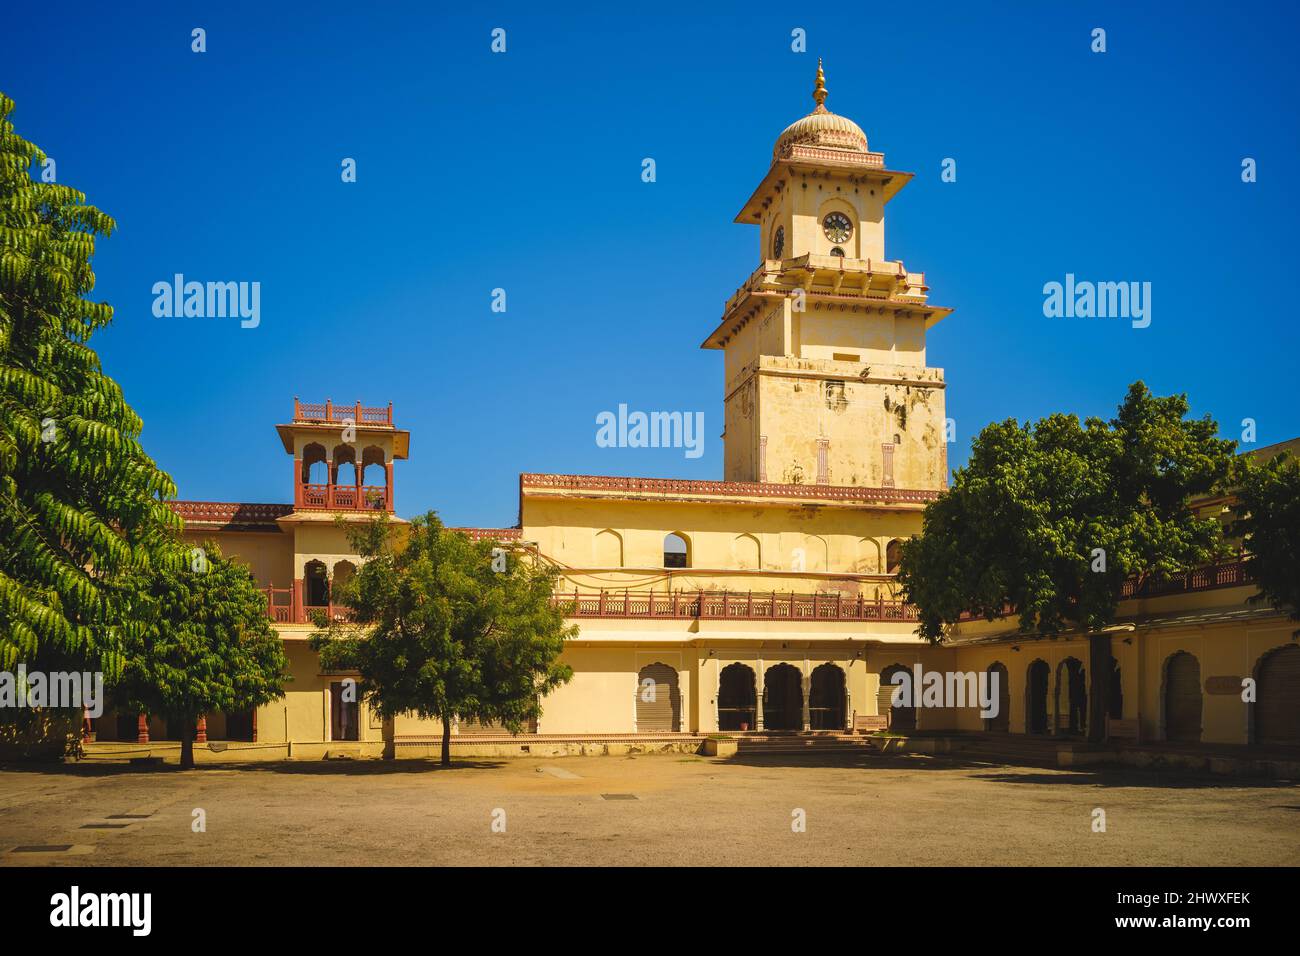 Torre del reloj del palacio de la ciudad en jaipur en rajasthan, india Foto de stock